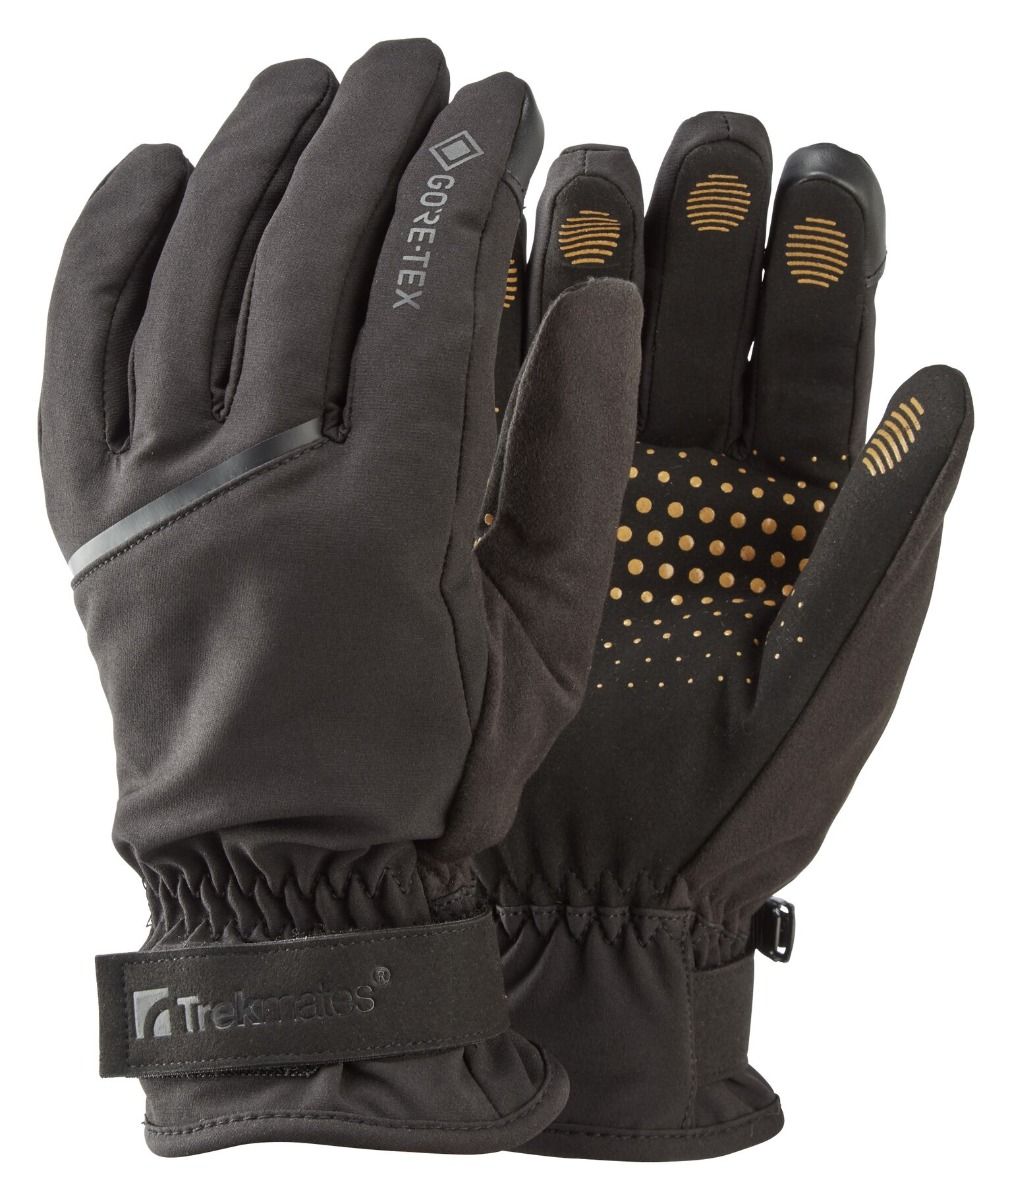 Рукавиці Trekmates Friktion Gore Tex Grip Glove TM 004543 Black, розмір S, чорні